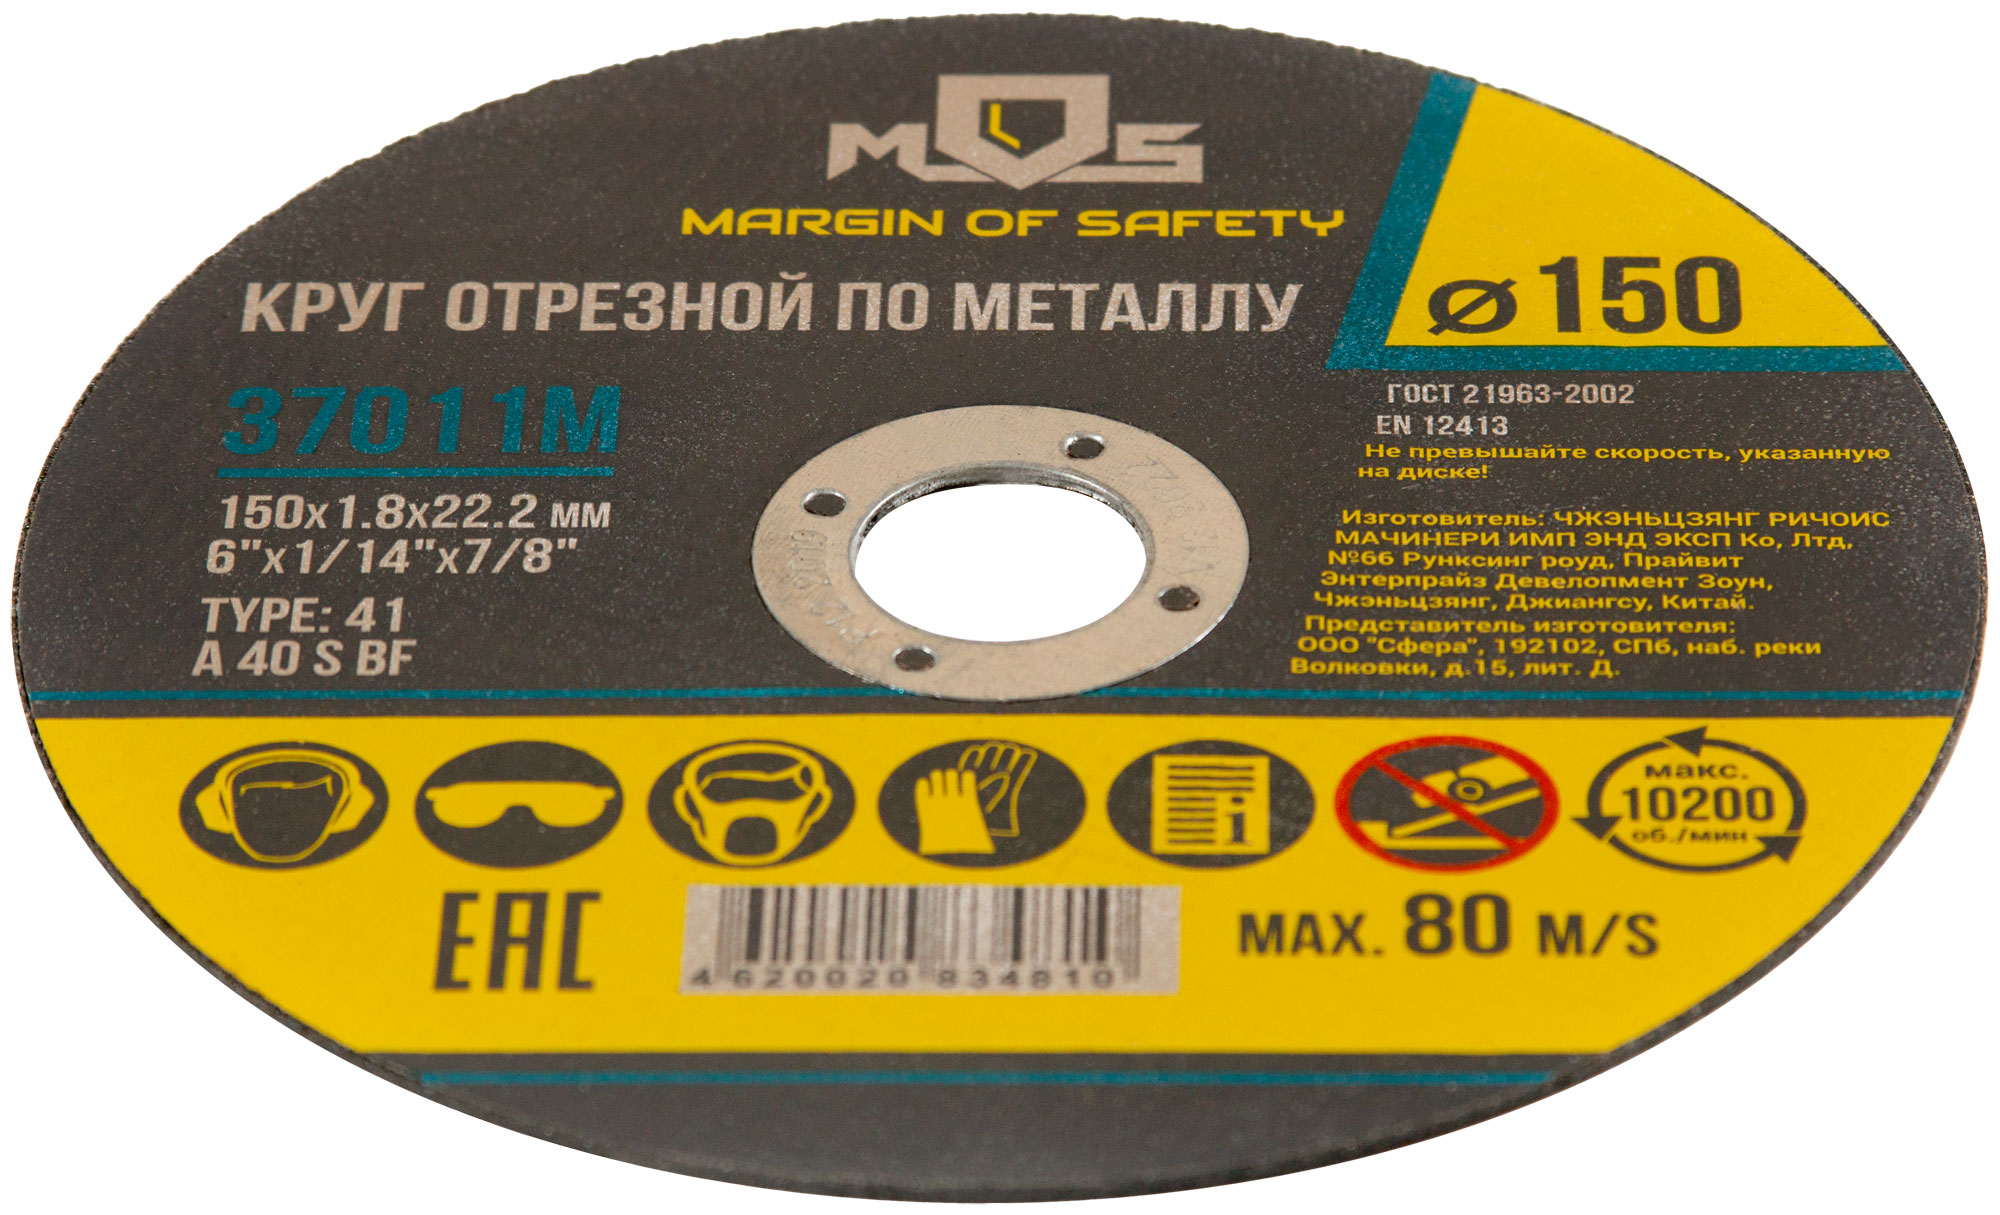 Круг отрезной по металлу MOS, посадочный диаметр 22,2 мм, 150х1,6 мм (Изображение 1)